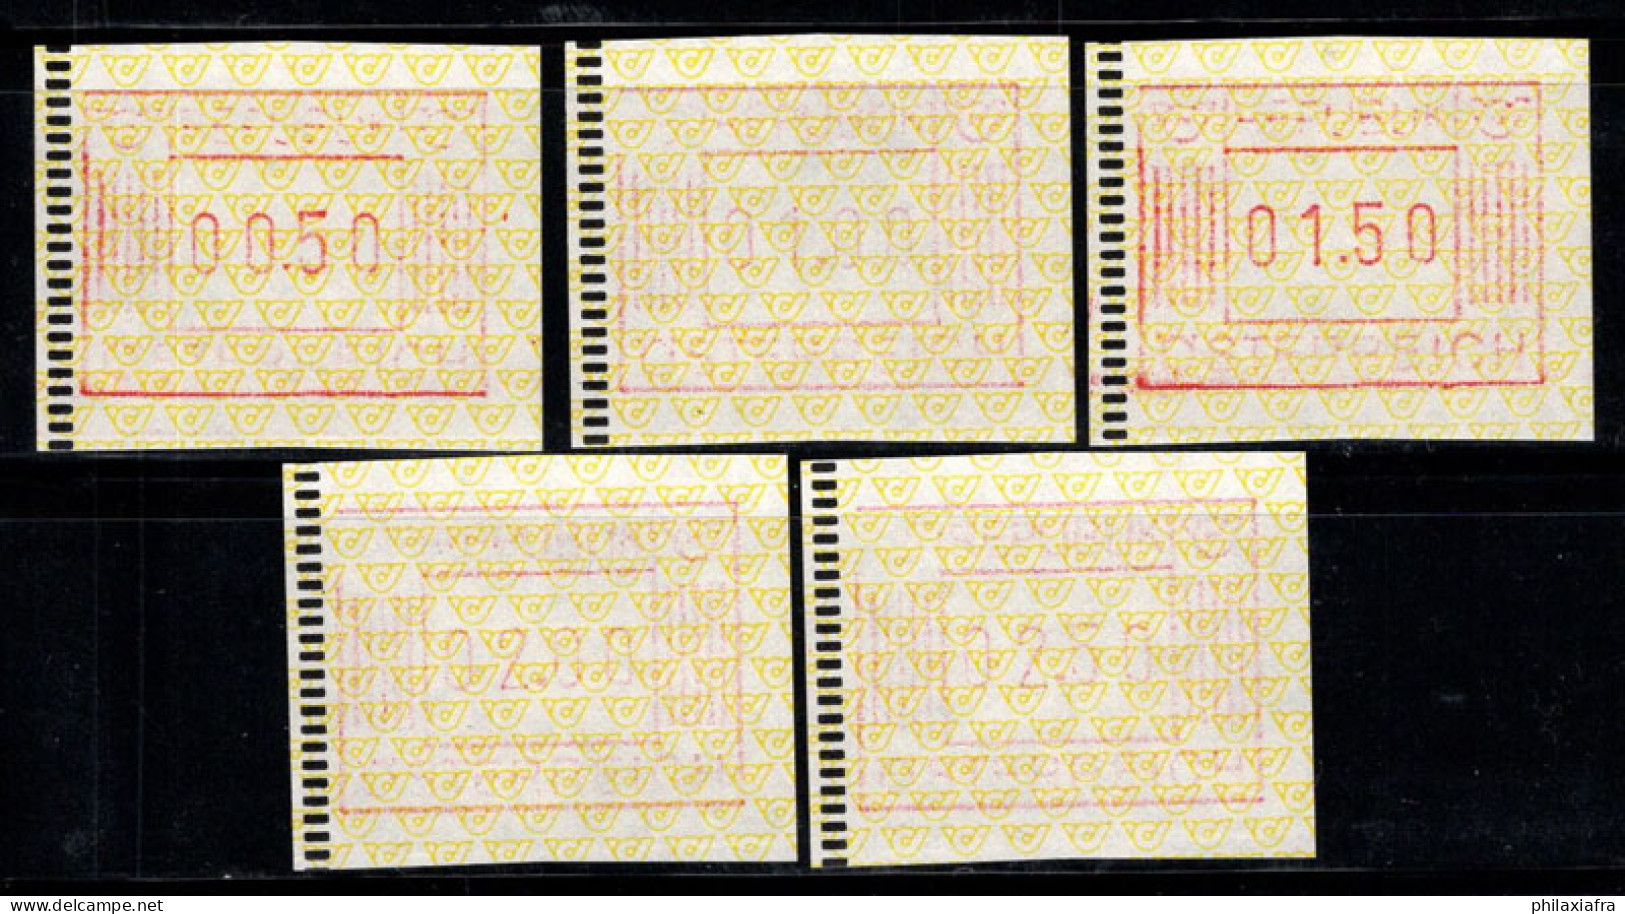 Autriche 1983 Mi. 1 Neuf ** 100% ATM Guichet Automatique, 00.50-02.50 - Machines à Affranchir (EMA)